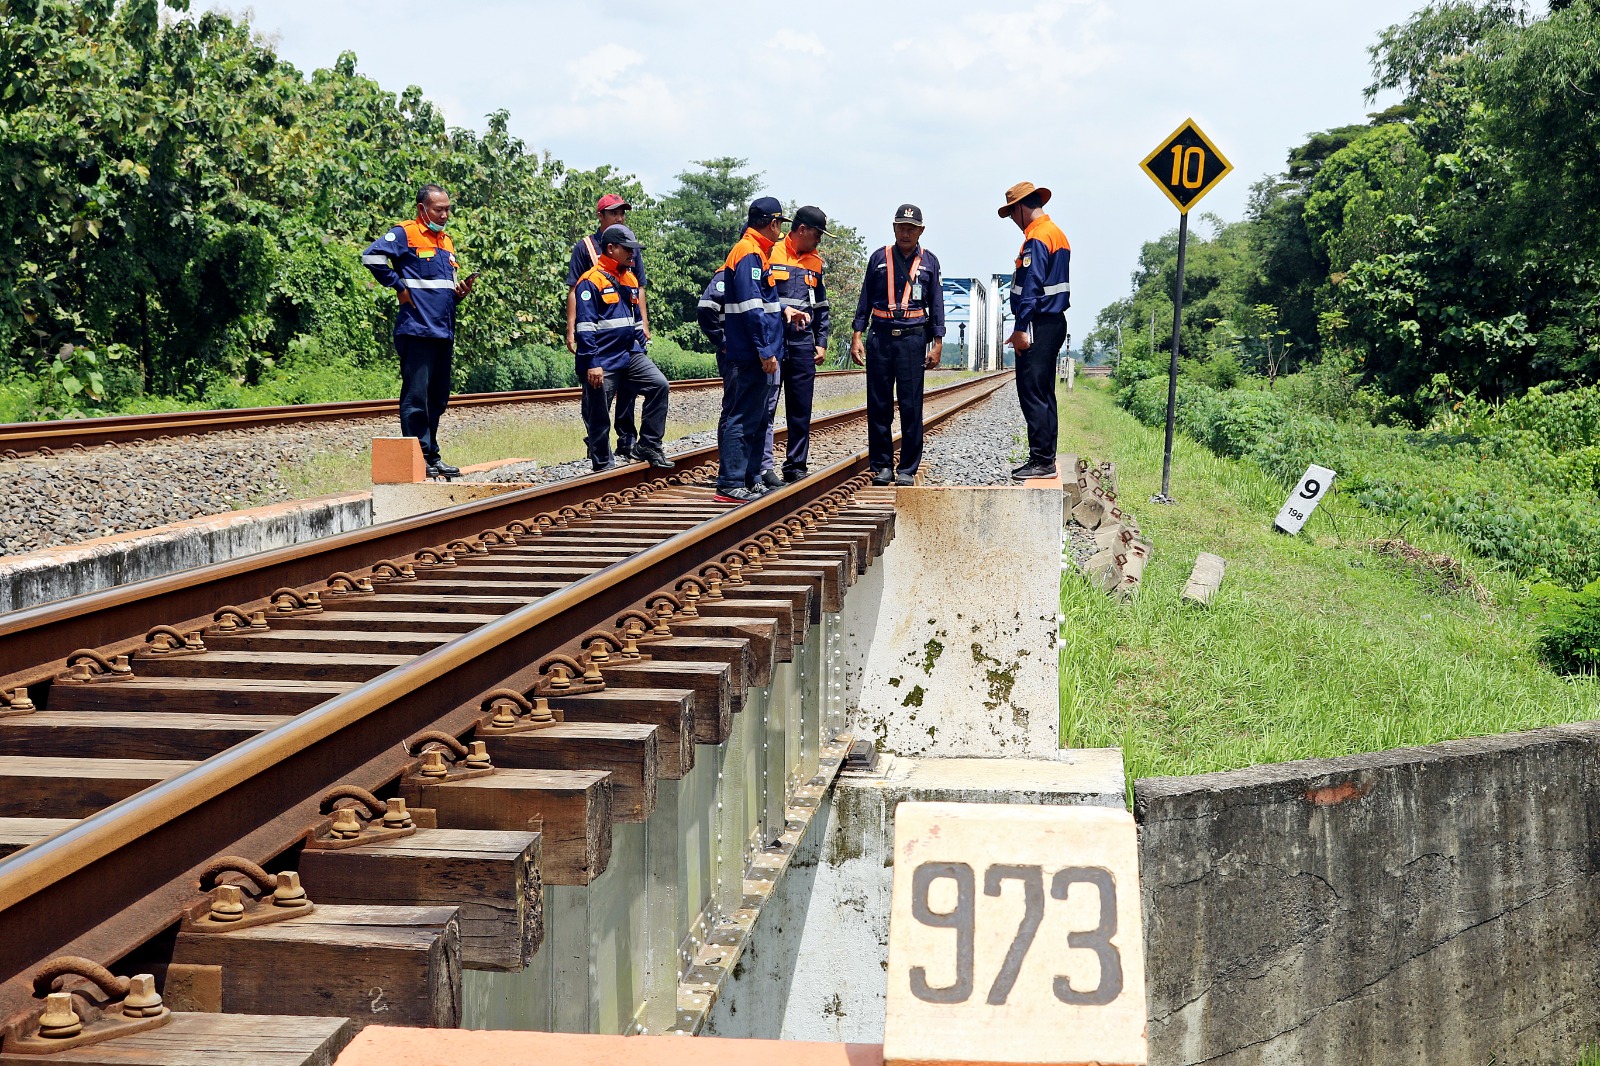 PEMETAAN. Hasil pemetaan, ada 14 titik pantau khusus jalur rawan kereta api, di sepanjang jalur wilayah Daop 3 Cirebon, disiapkan antisipasi khusus dengan menempatkan AMUS. FOTO: ASEP SAEPUL MIELAH/RAKCER.ID